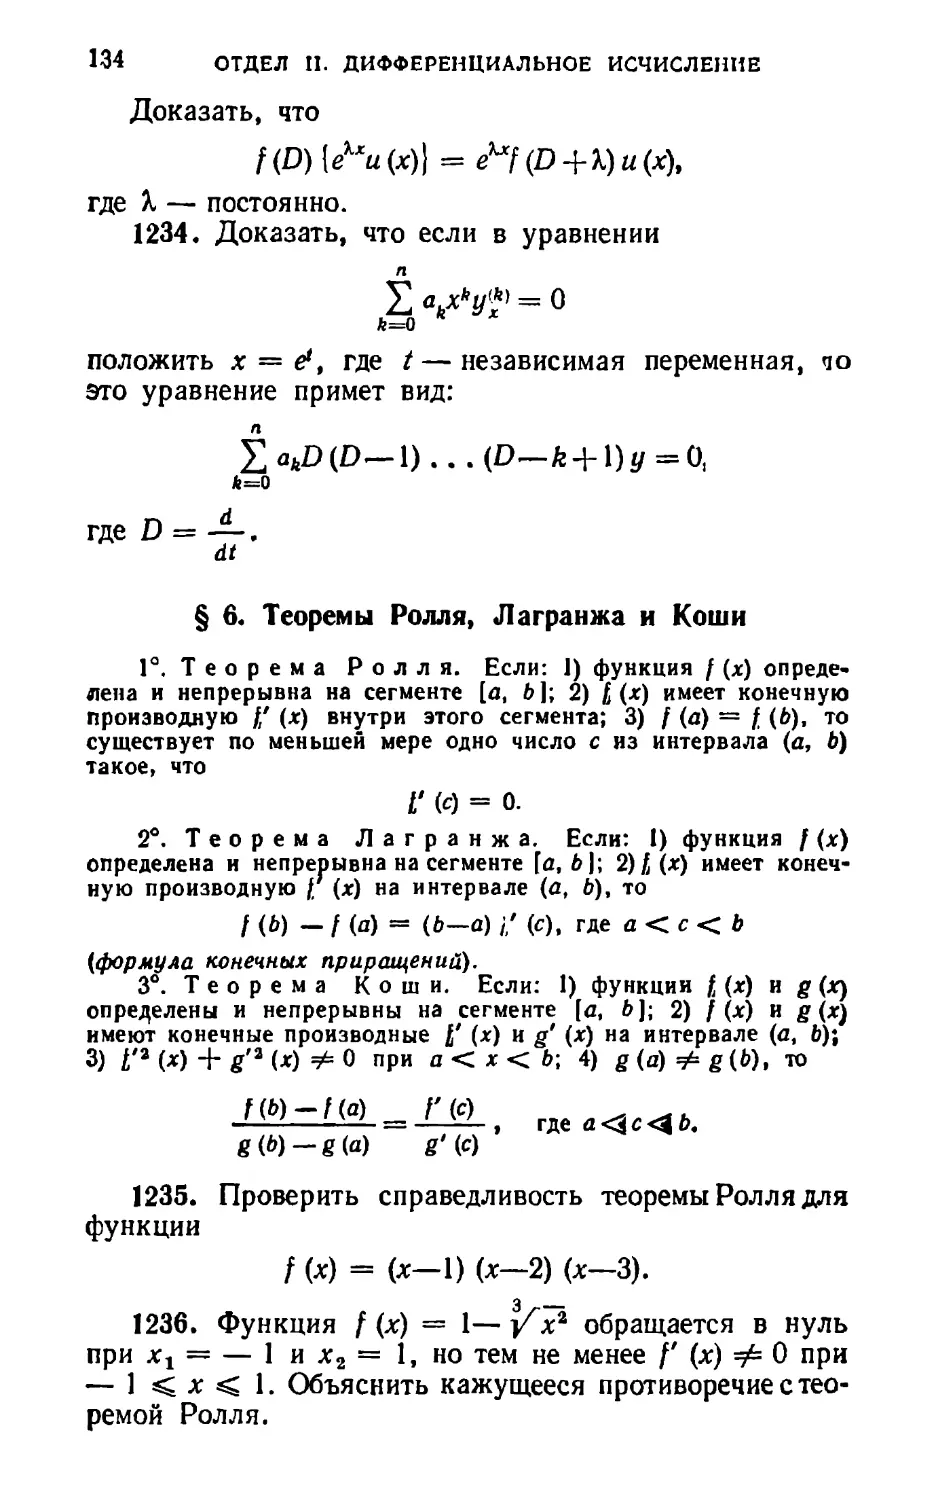 § 6. Теоремы Ролля, Лагранжа и Коши